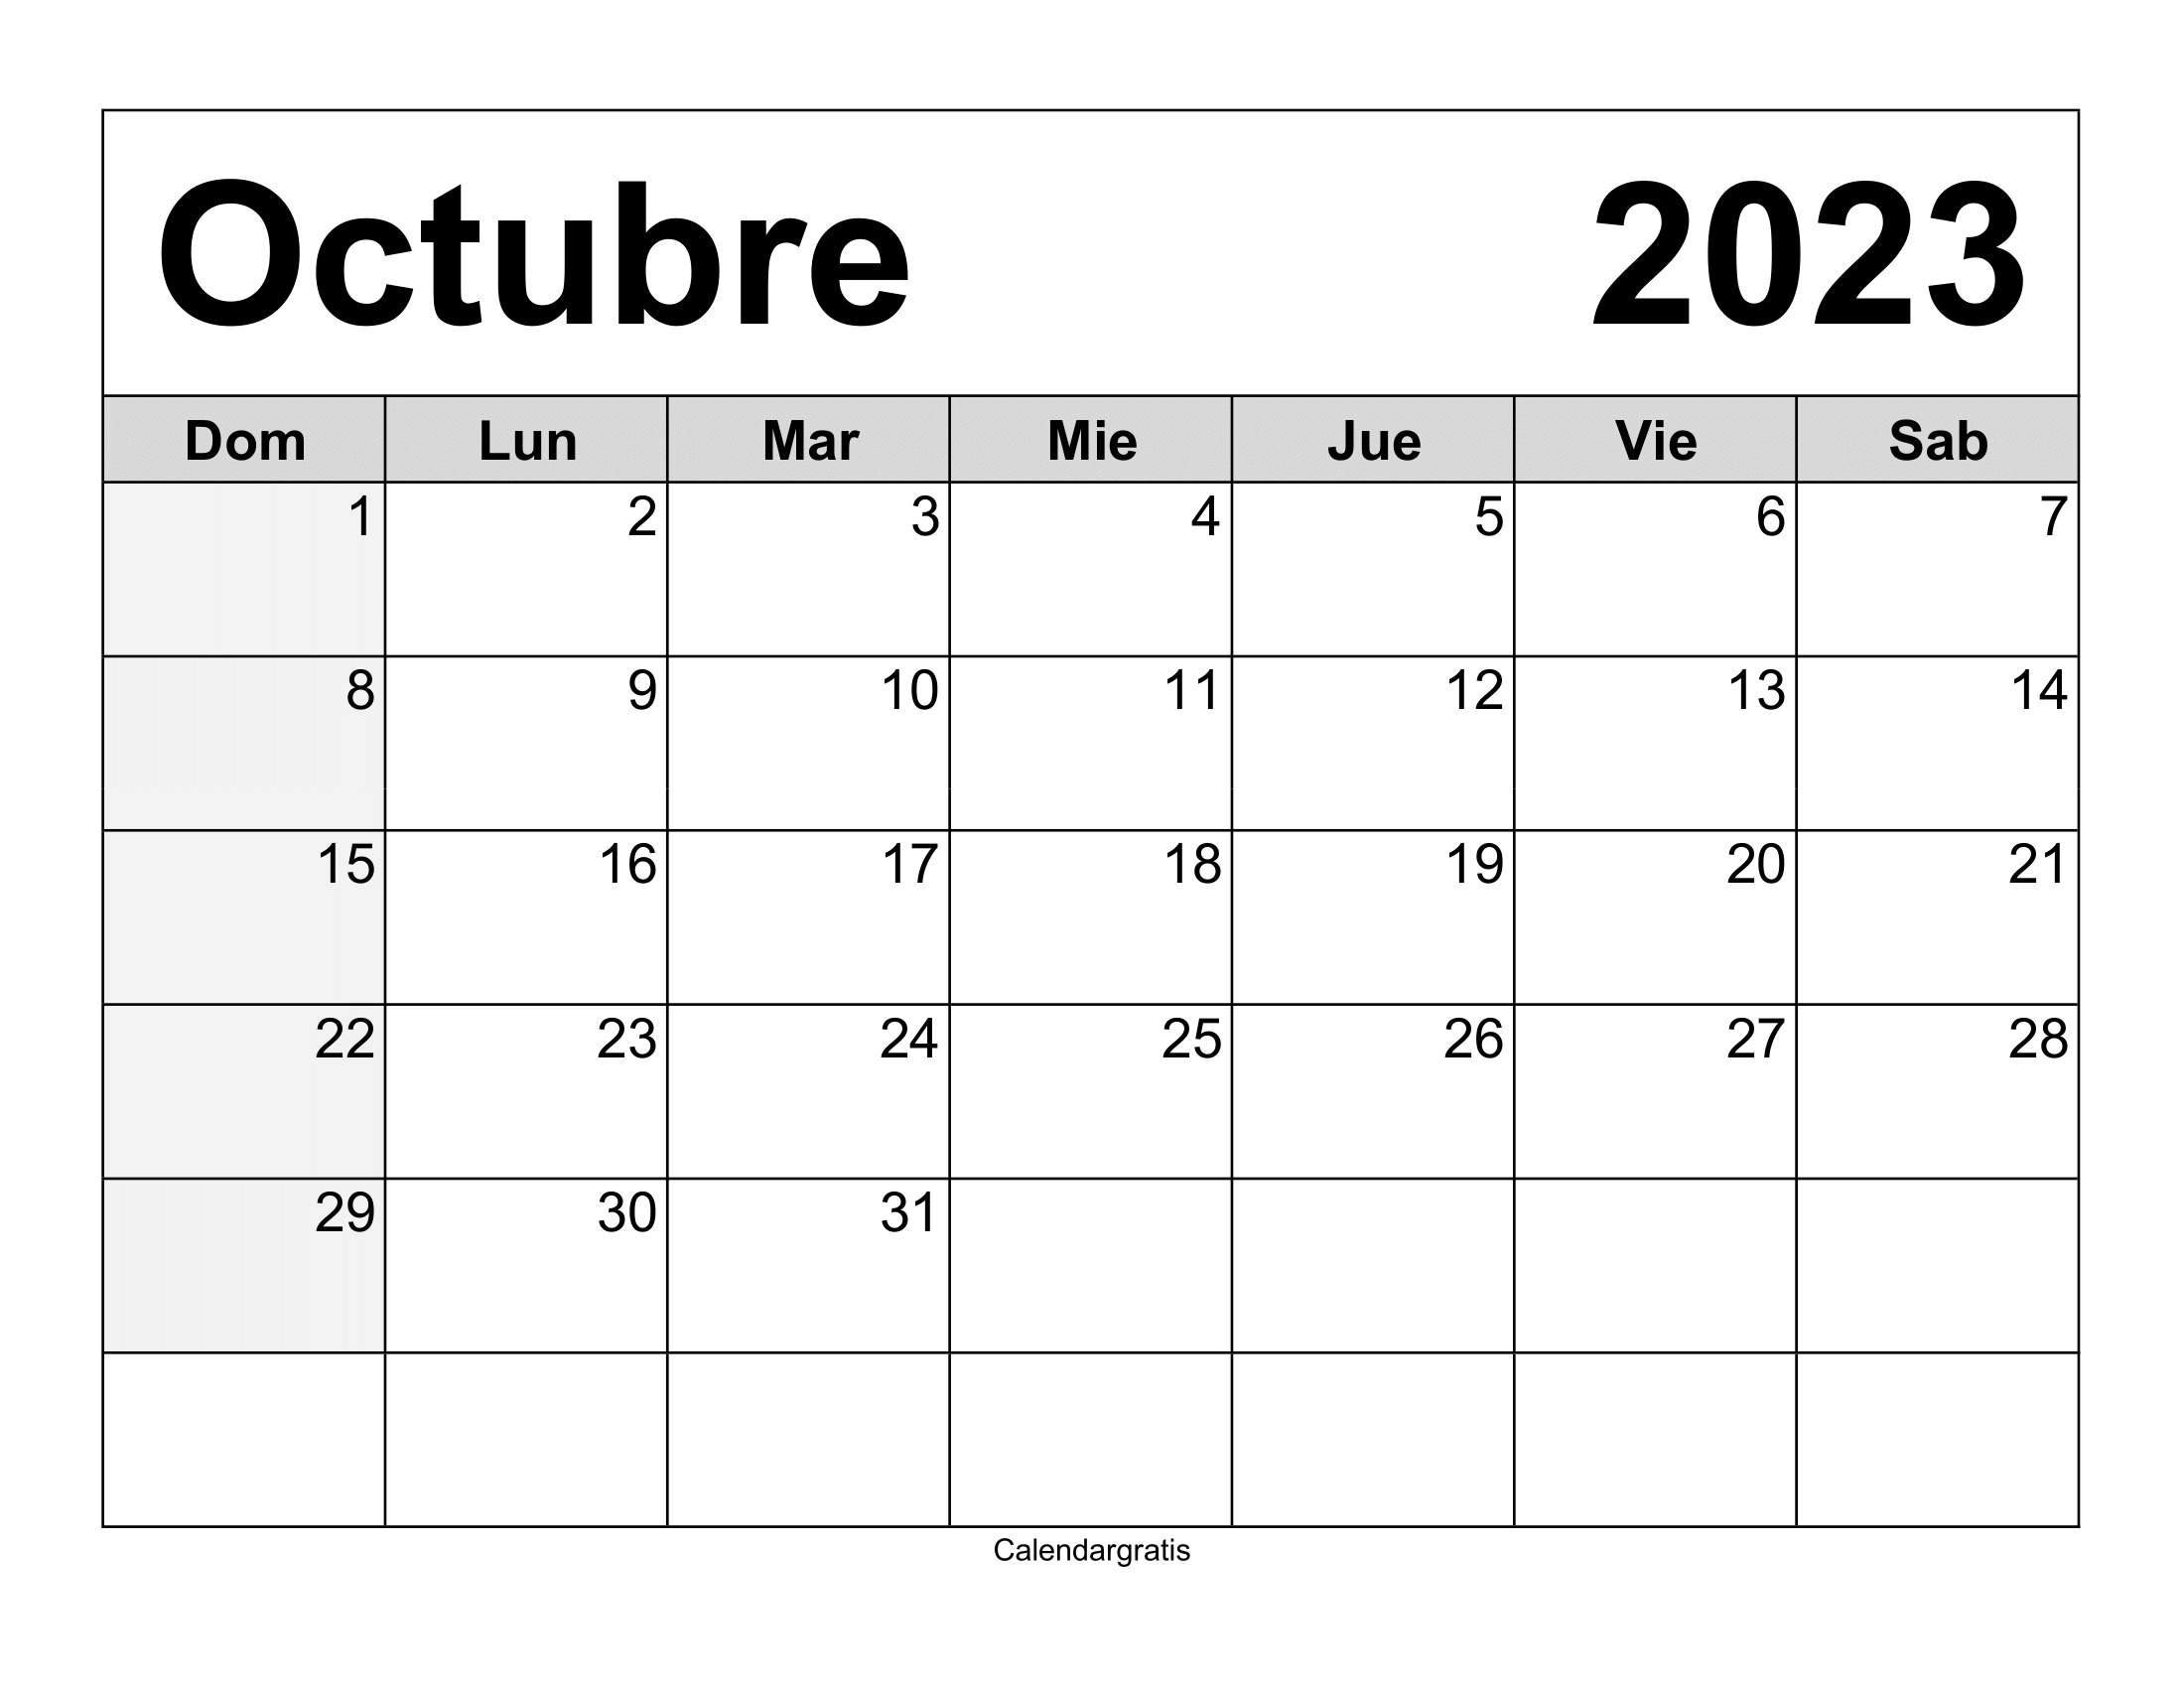 Calendario vacío de calendario octubre 2023 para imprimir y completar